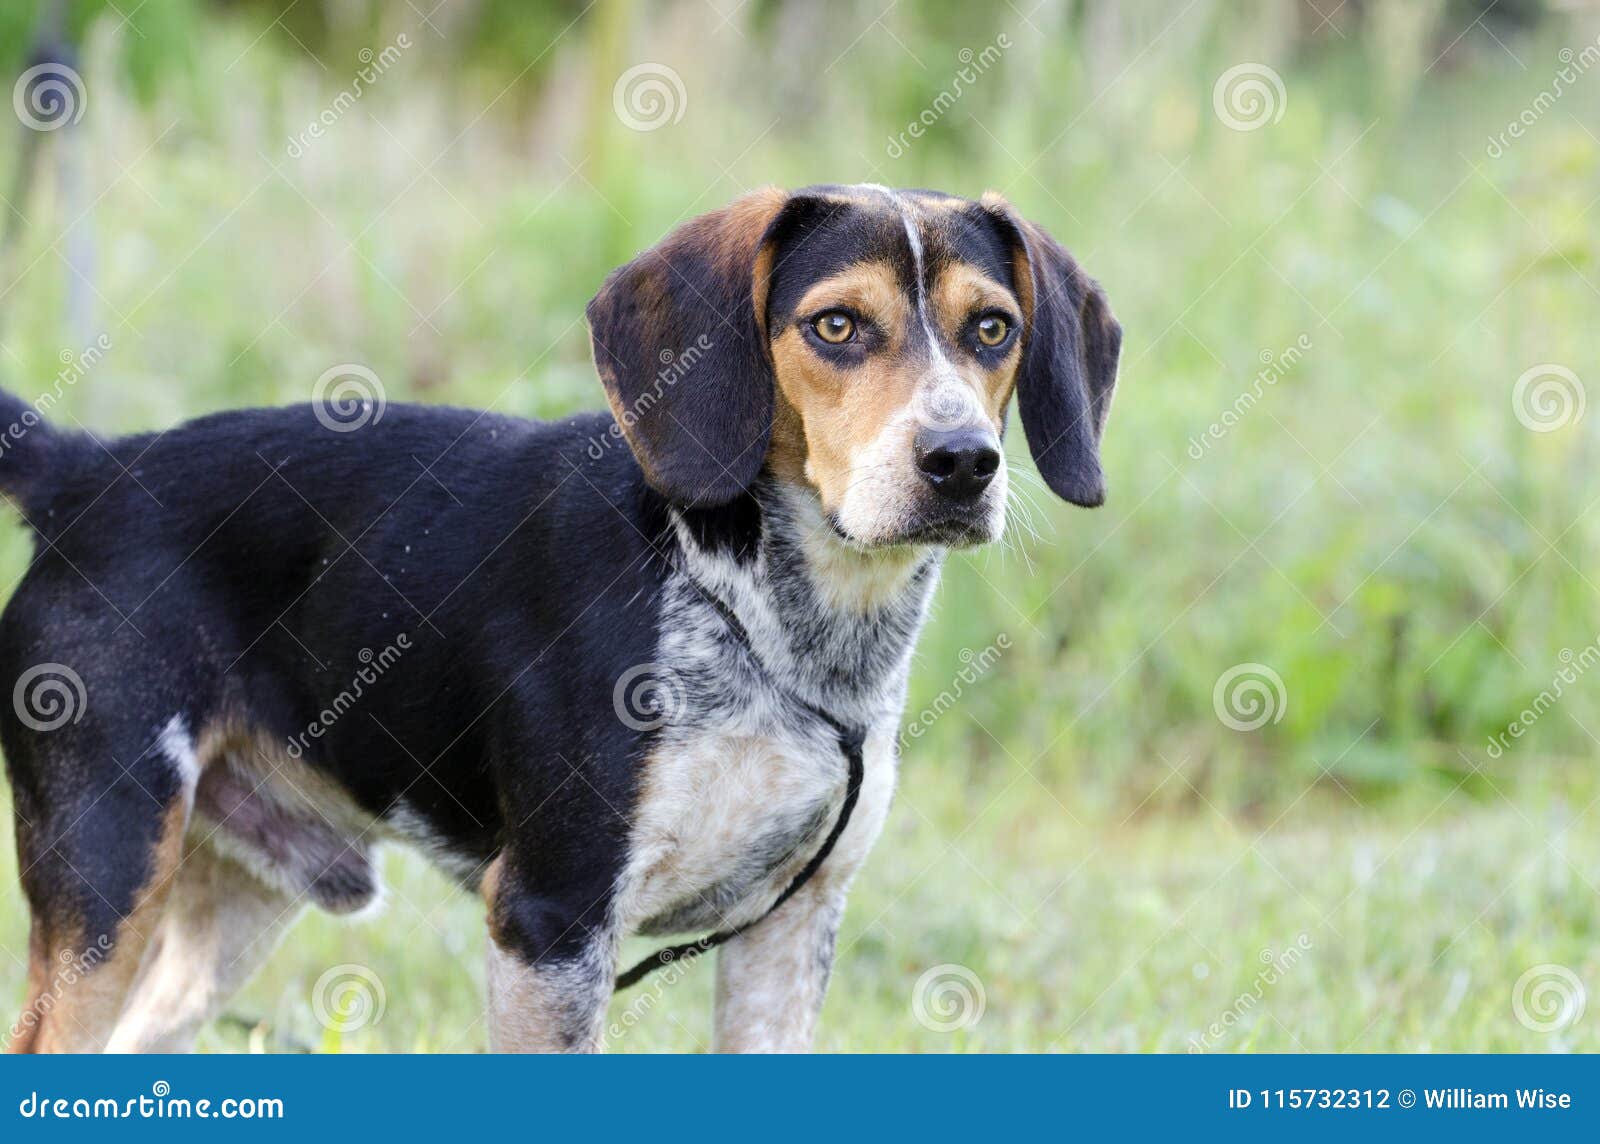 beagle adoption